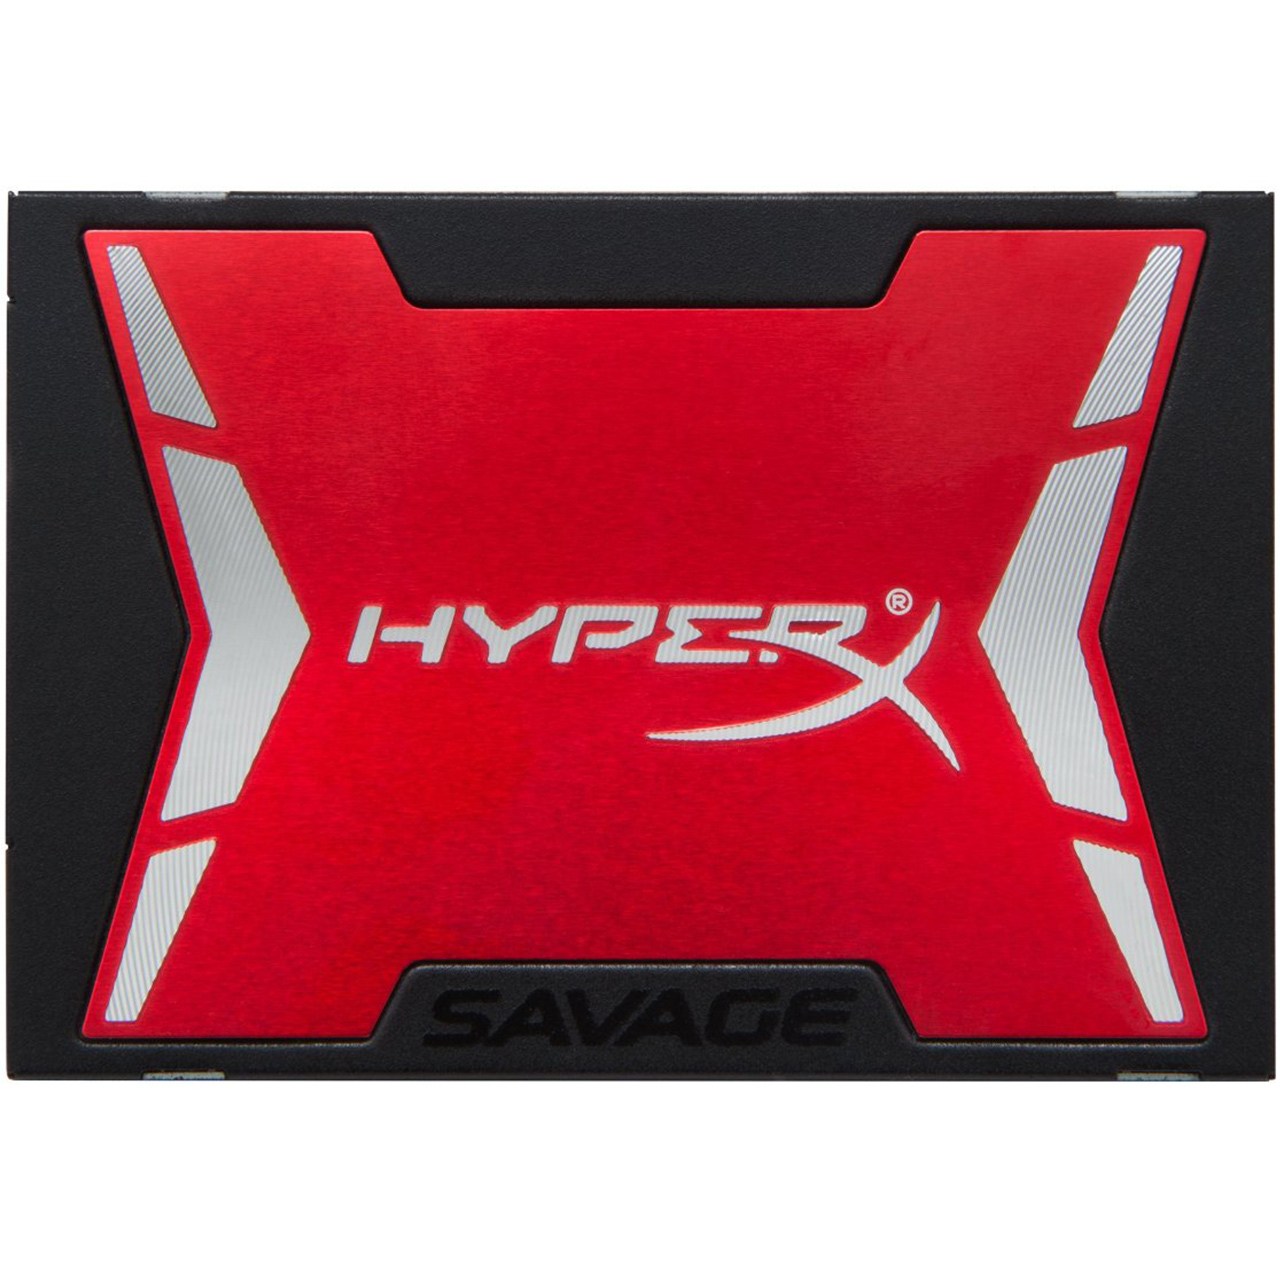 حافظه SSD کینگستون مدل HyperX Savage ظرفیت 480 گیگابایت